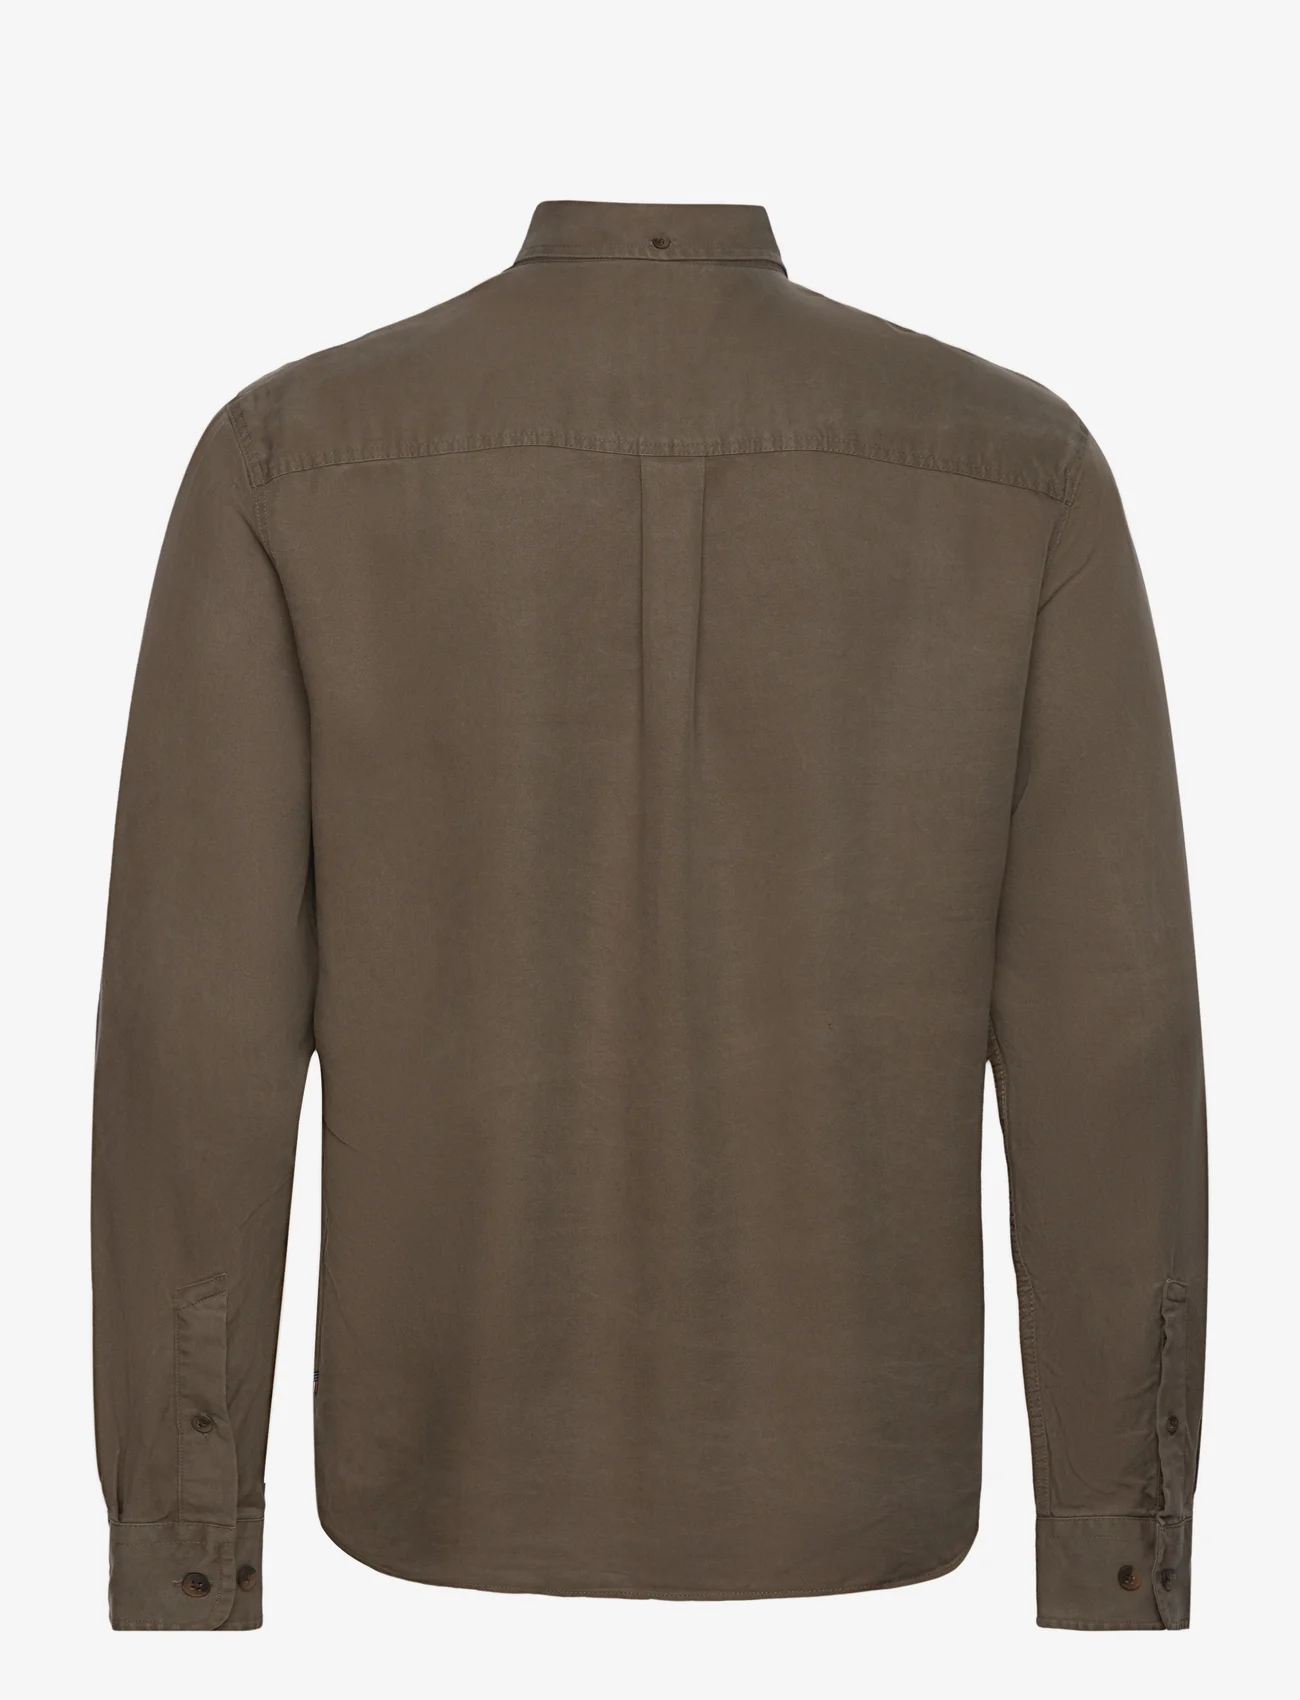 Lexington Clothing - Carl Lyocell Shirt - basic skjorter - green - 1